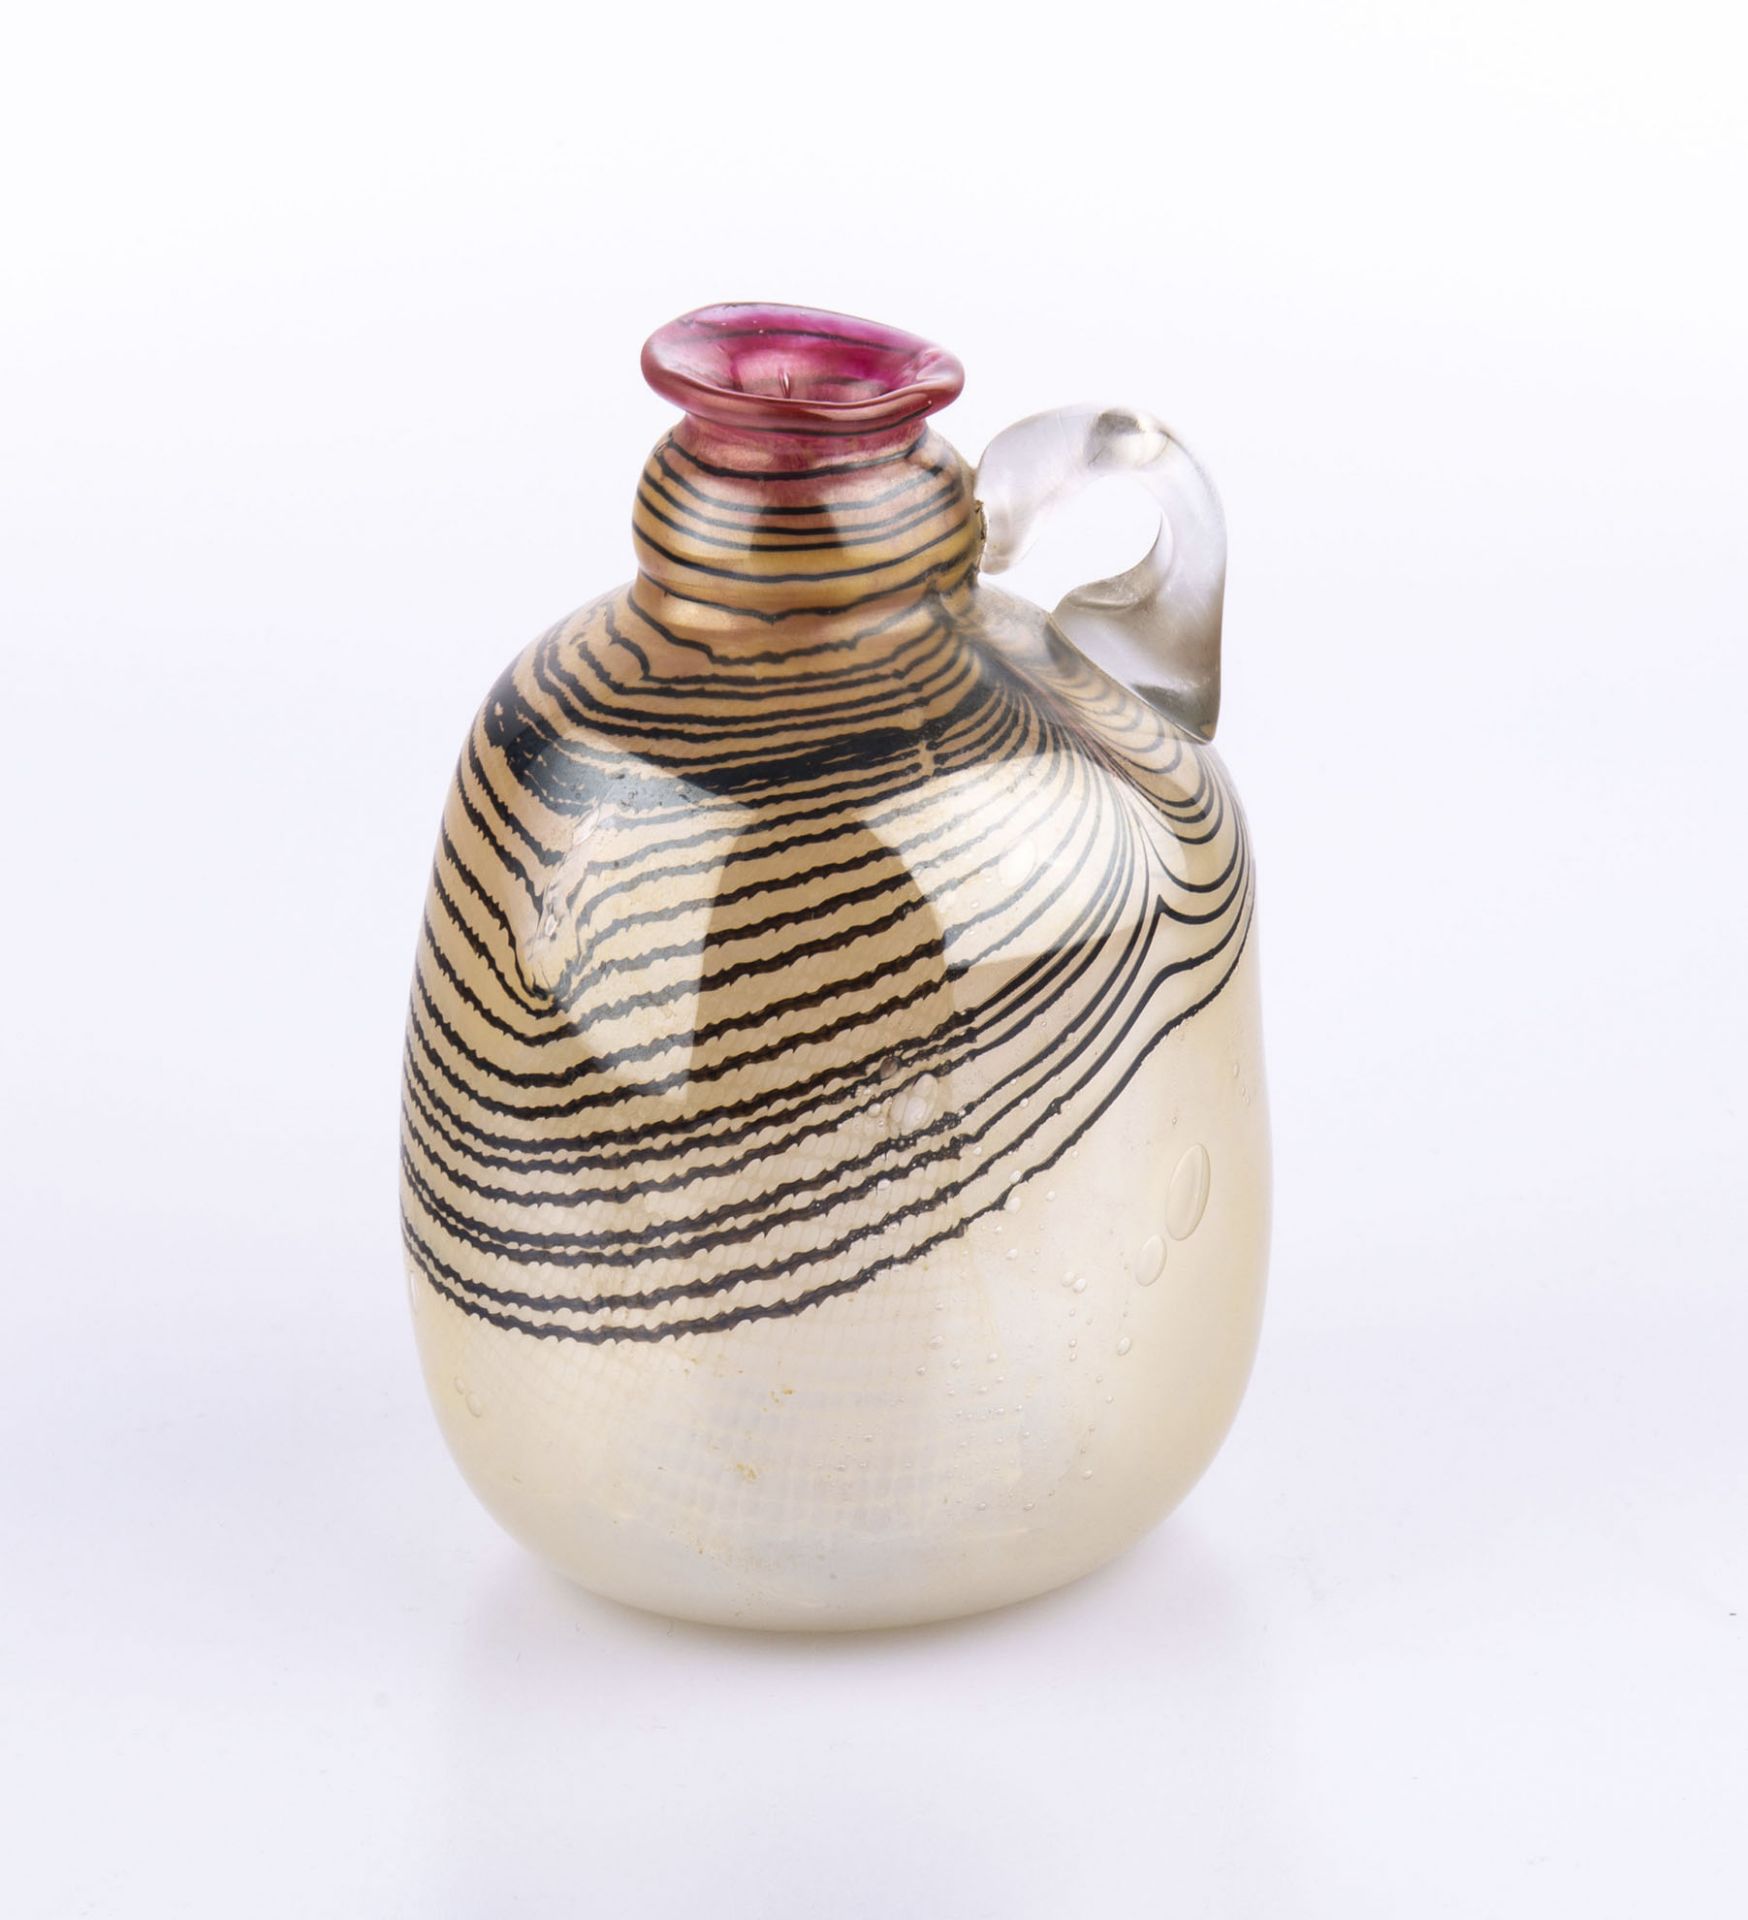 Vase mit HenkelErwin Eisch (1927 Frauenau), 1984, Glas, irisierend, Höhe 19 cm, unterseitig